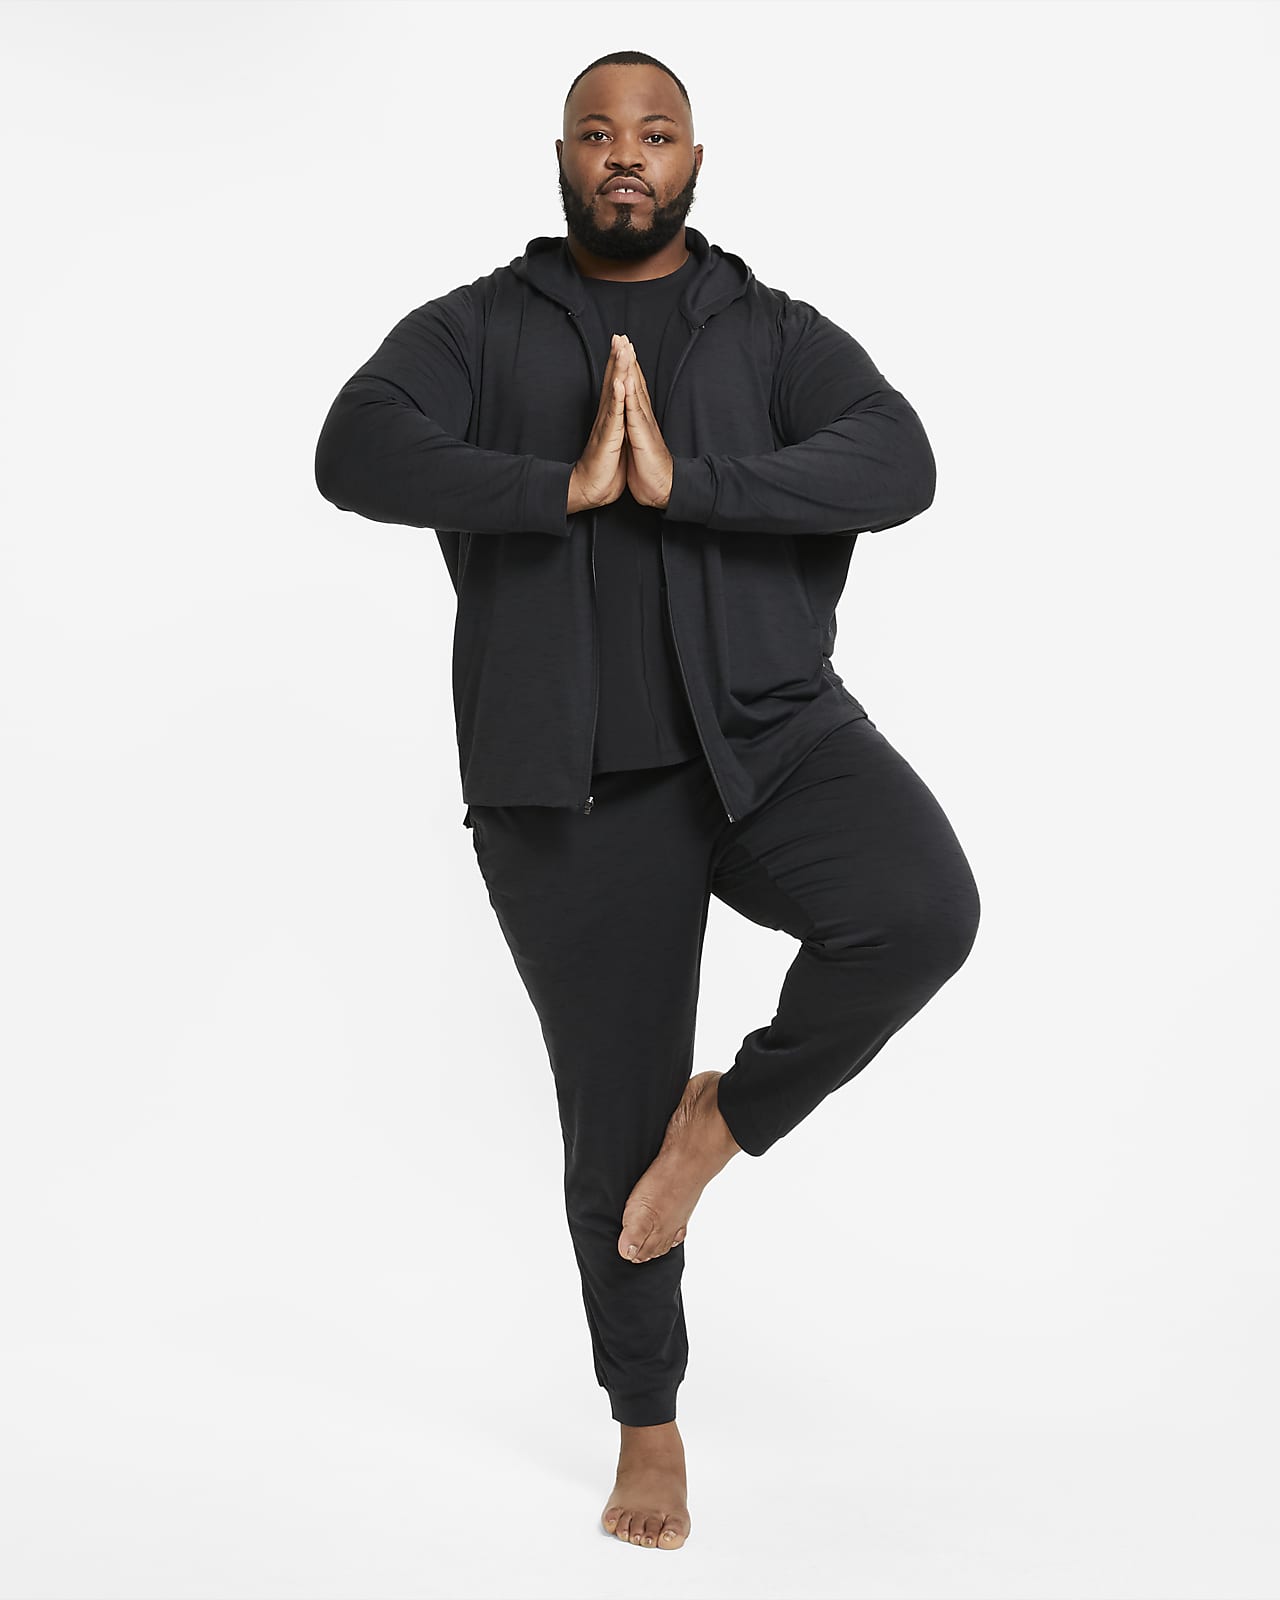 Vêtements & accessoires de yoga pour homme. Nike FR